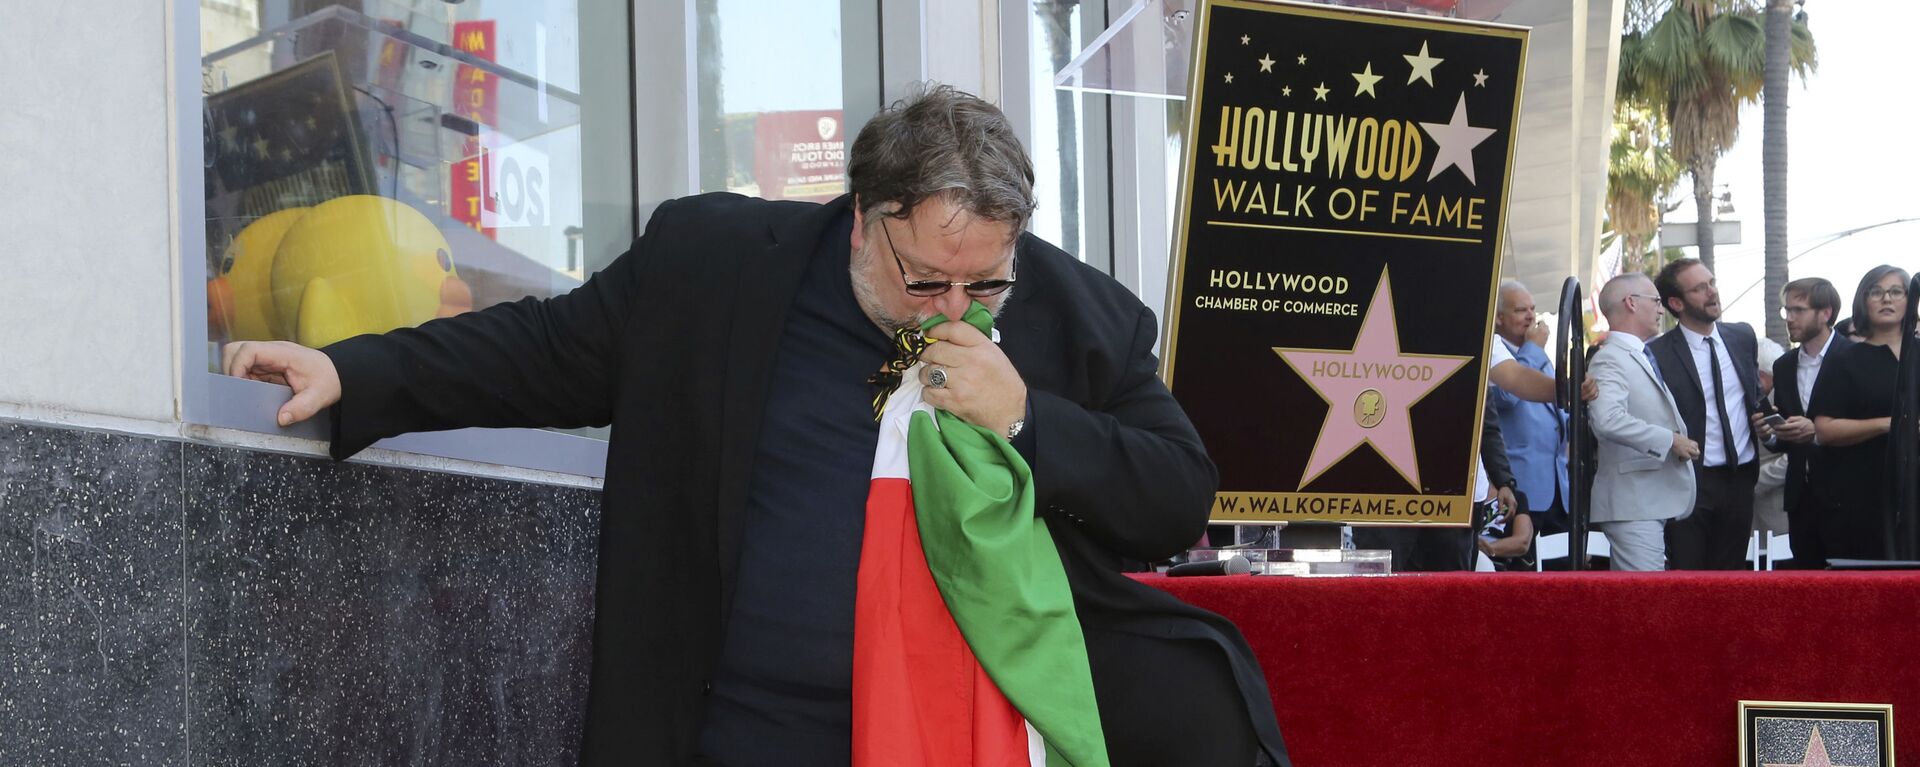 Guillermo del Toro alcanza las estrellas: el director mexicano llega al Paseo de la Fama - Sputnik Mundo, 1920, 07.08.2019